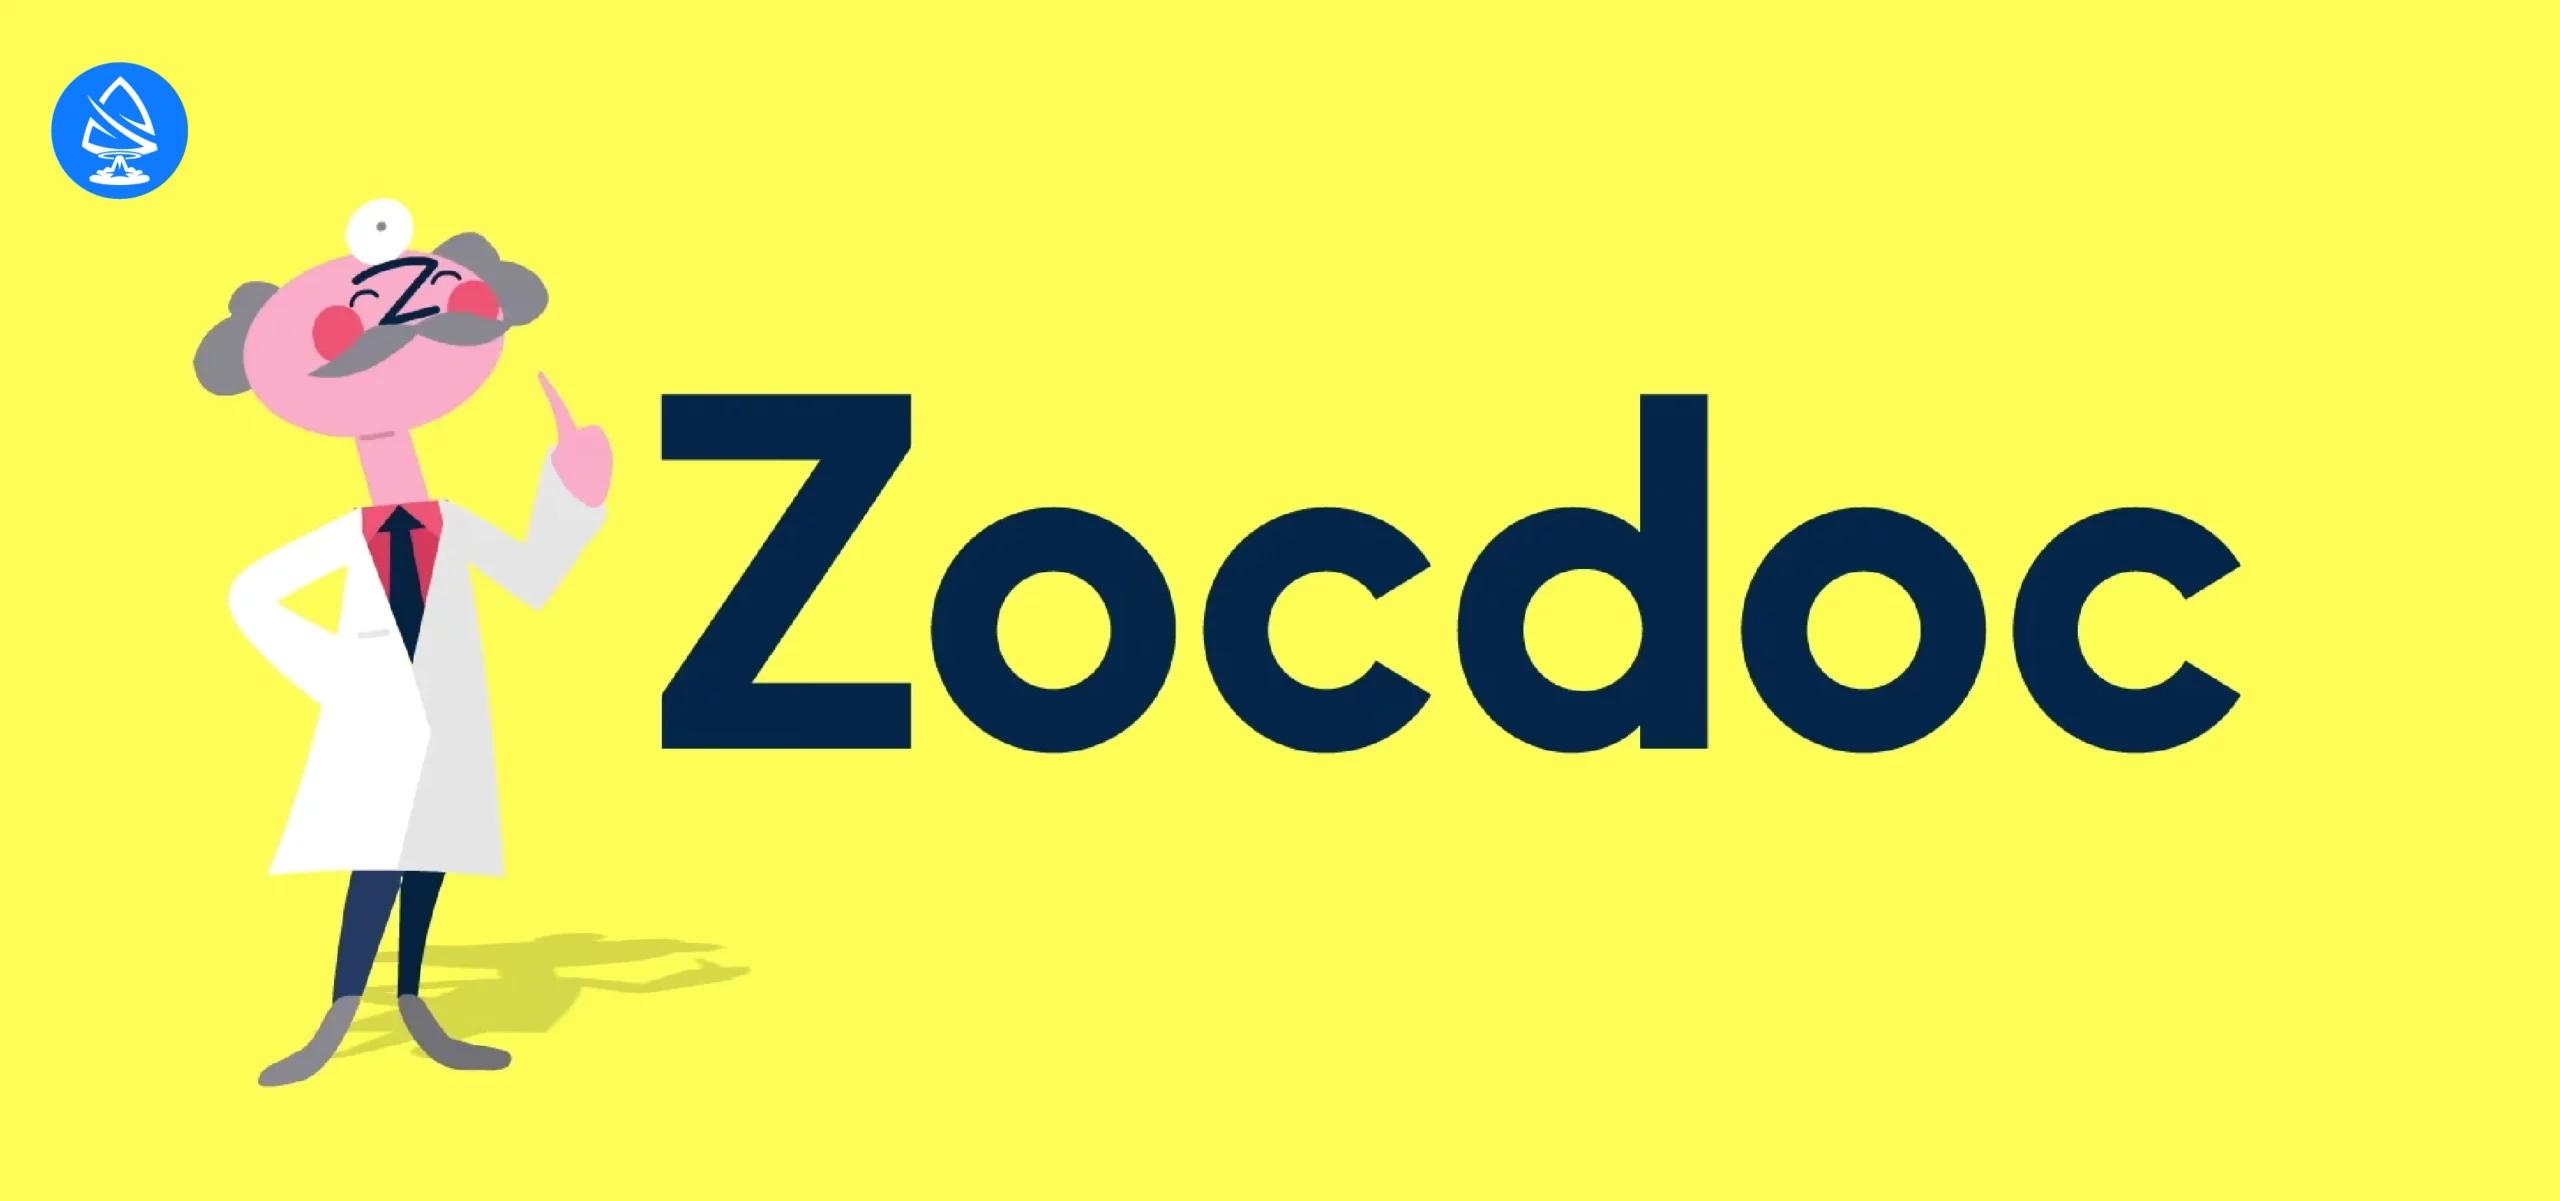 Case Study 3: Zocdoc